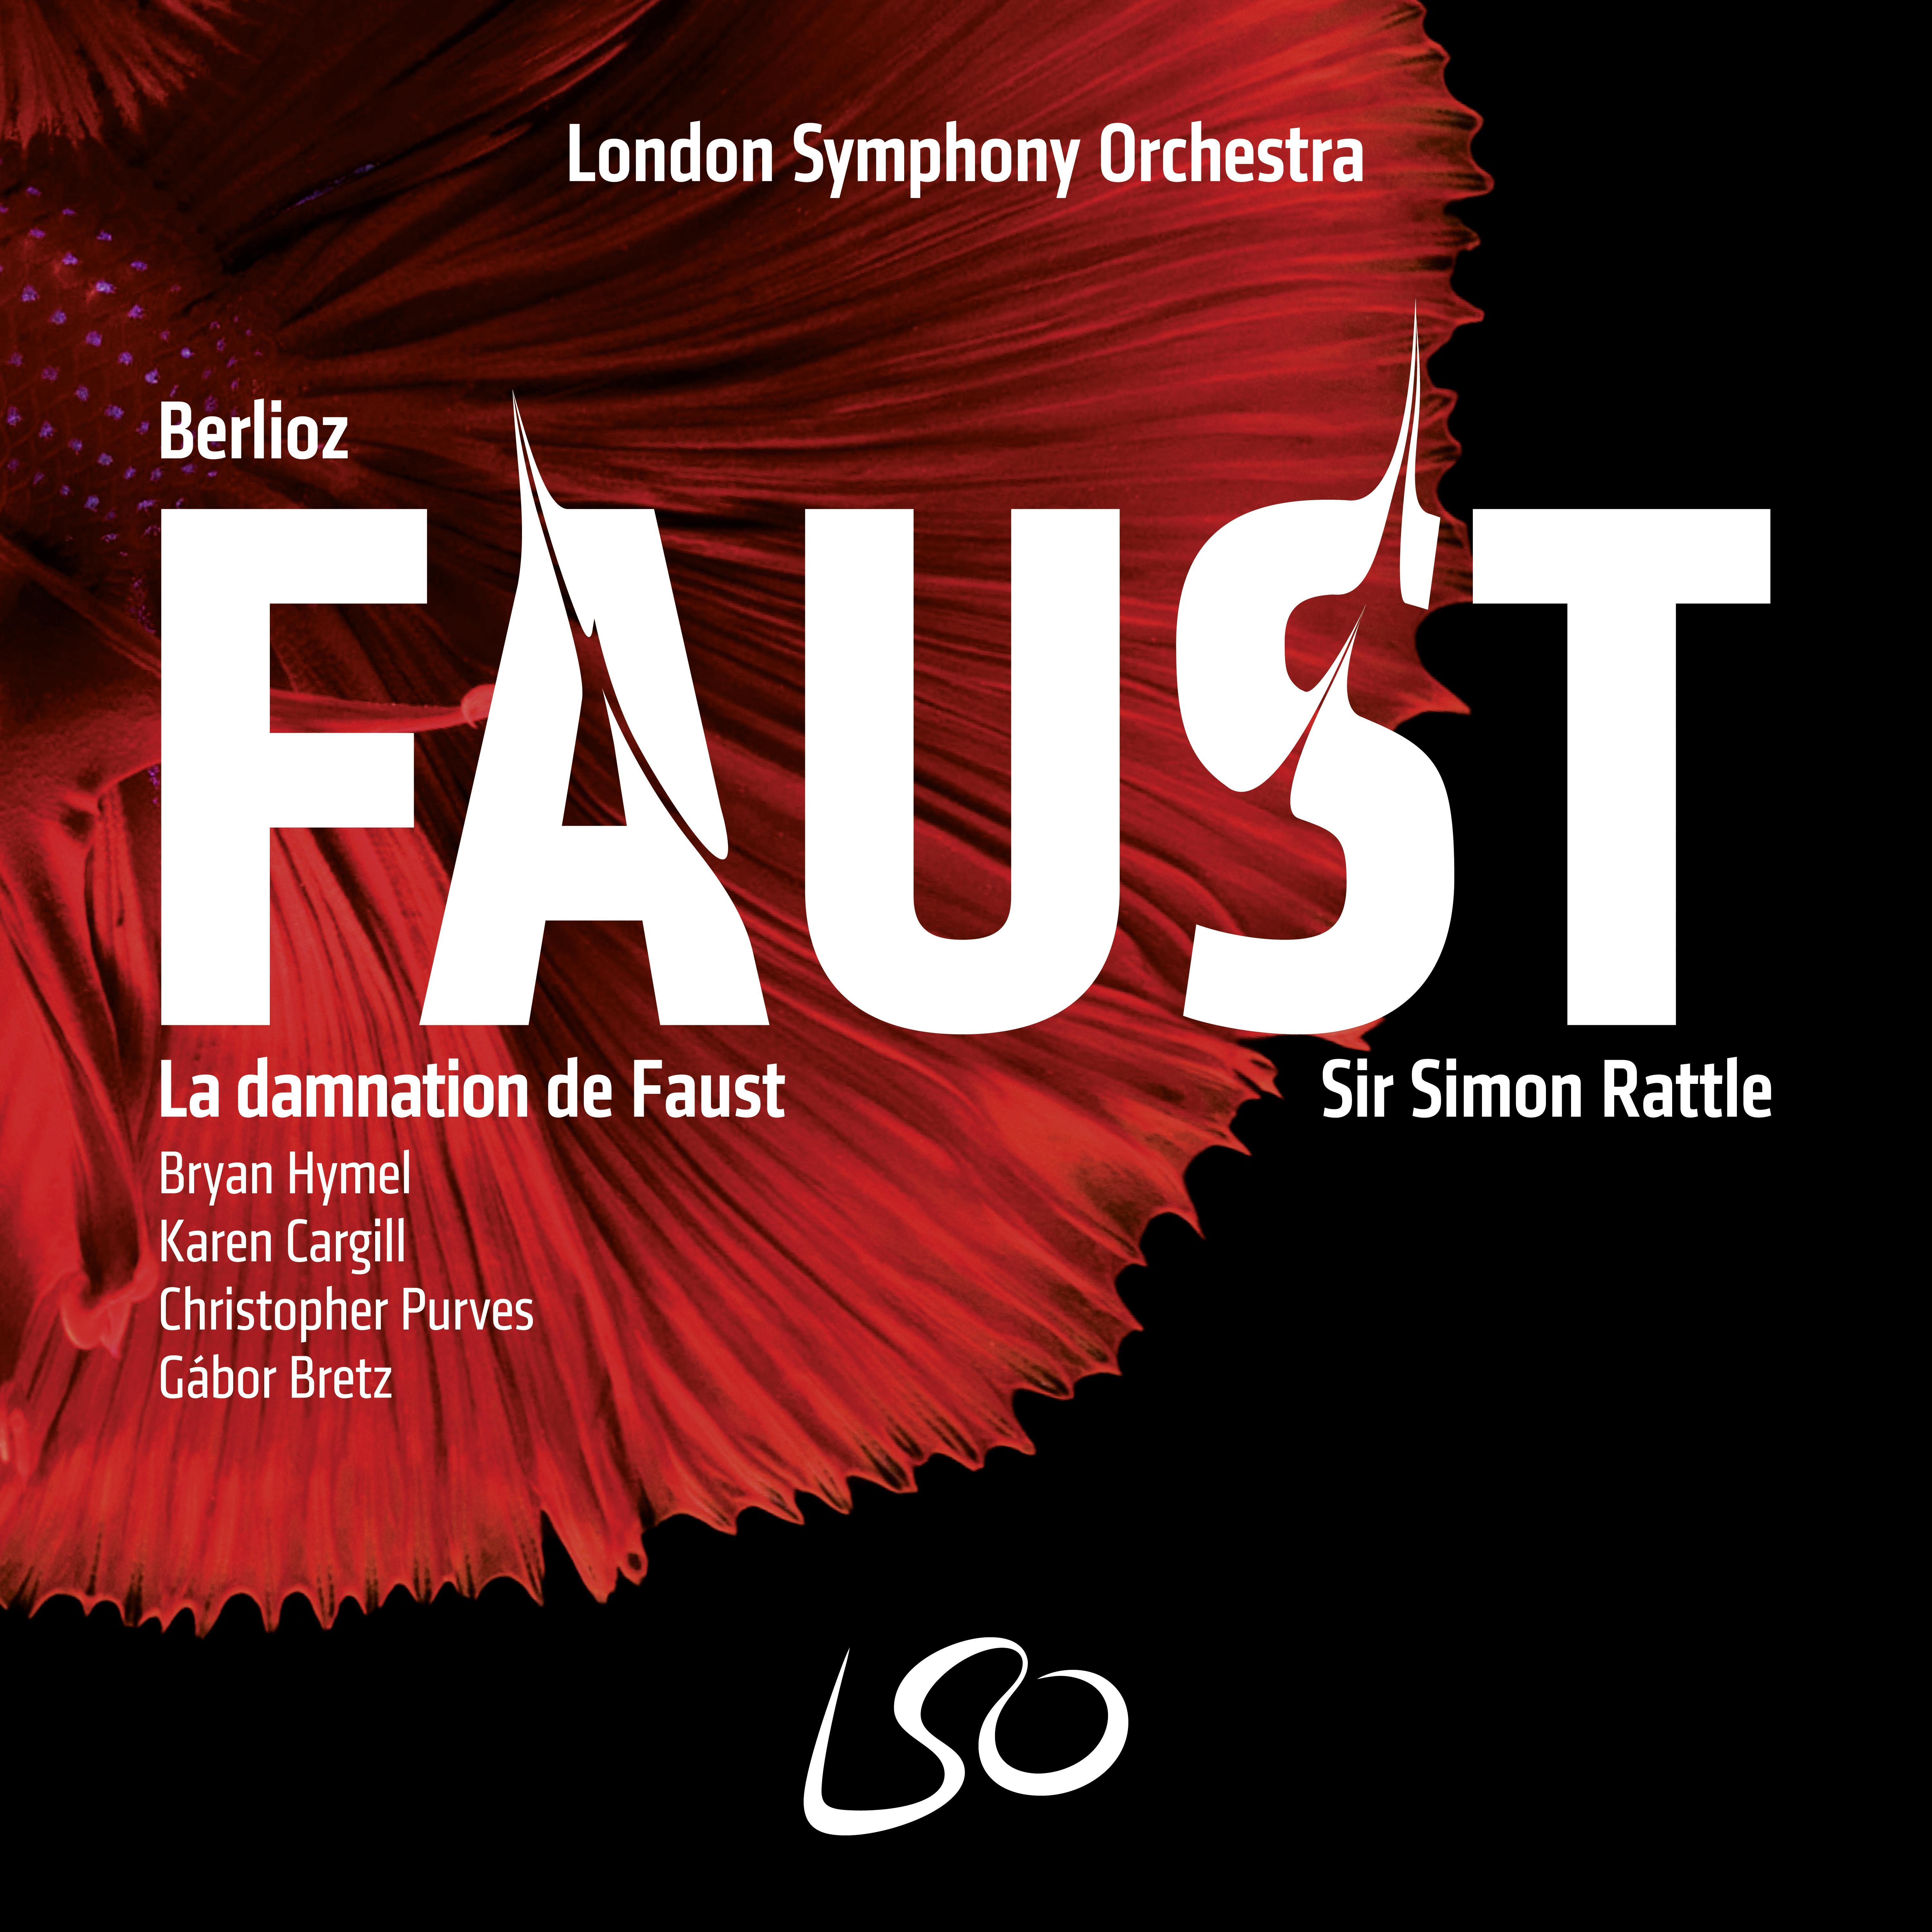 La Damnation de Faust, Op. 24, H. 111: Pt. IV: Sce ne XV  " Au son des trompettes"